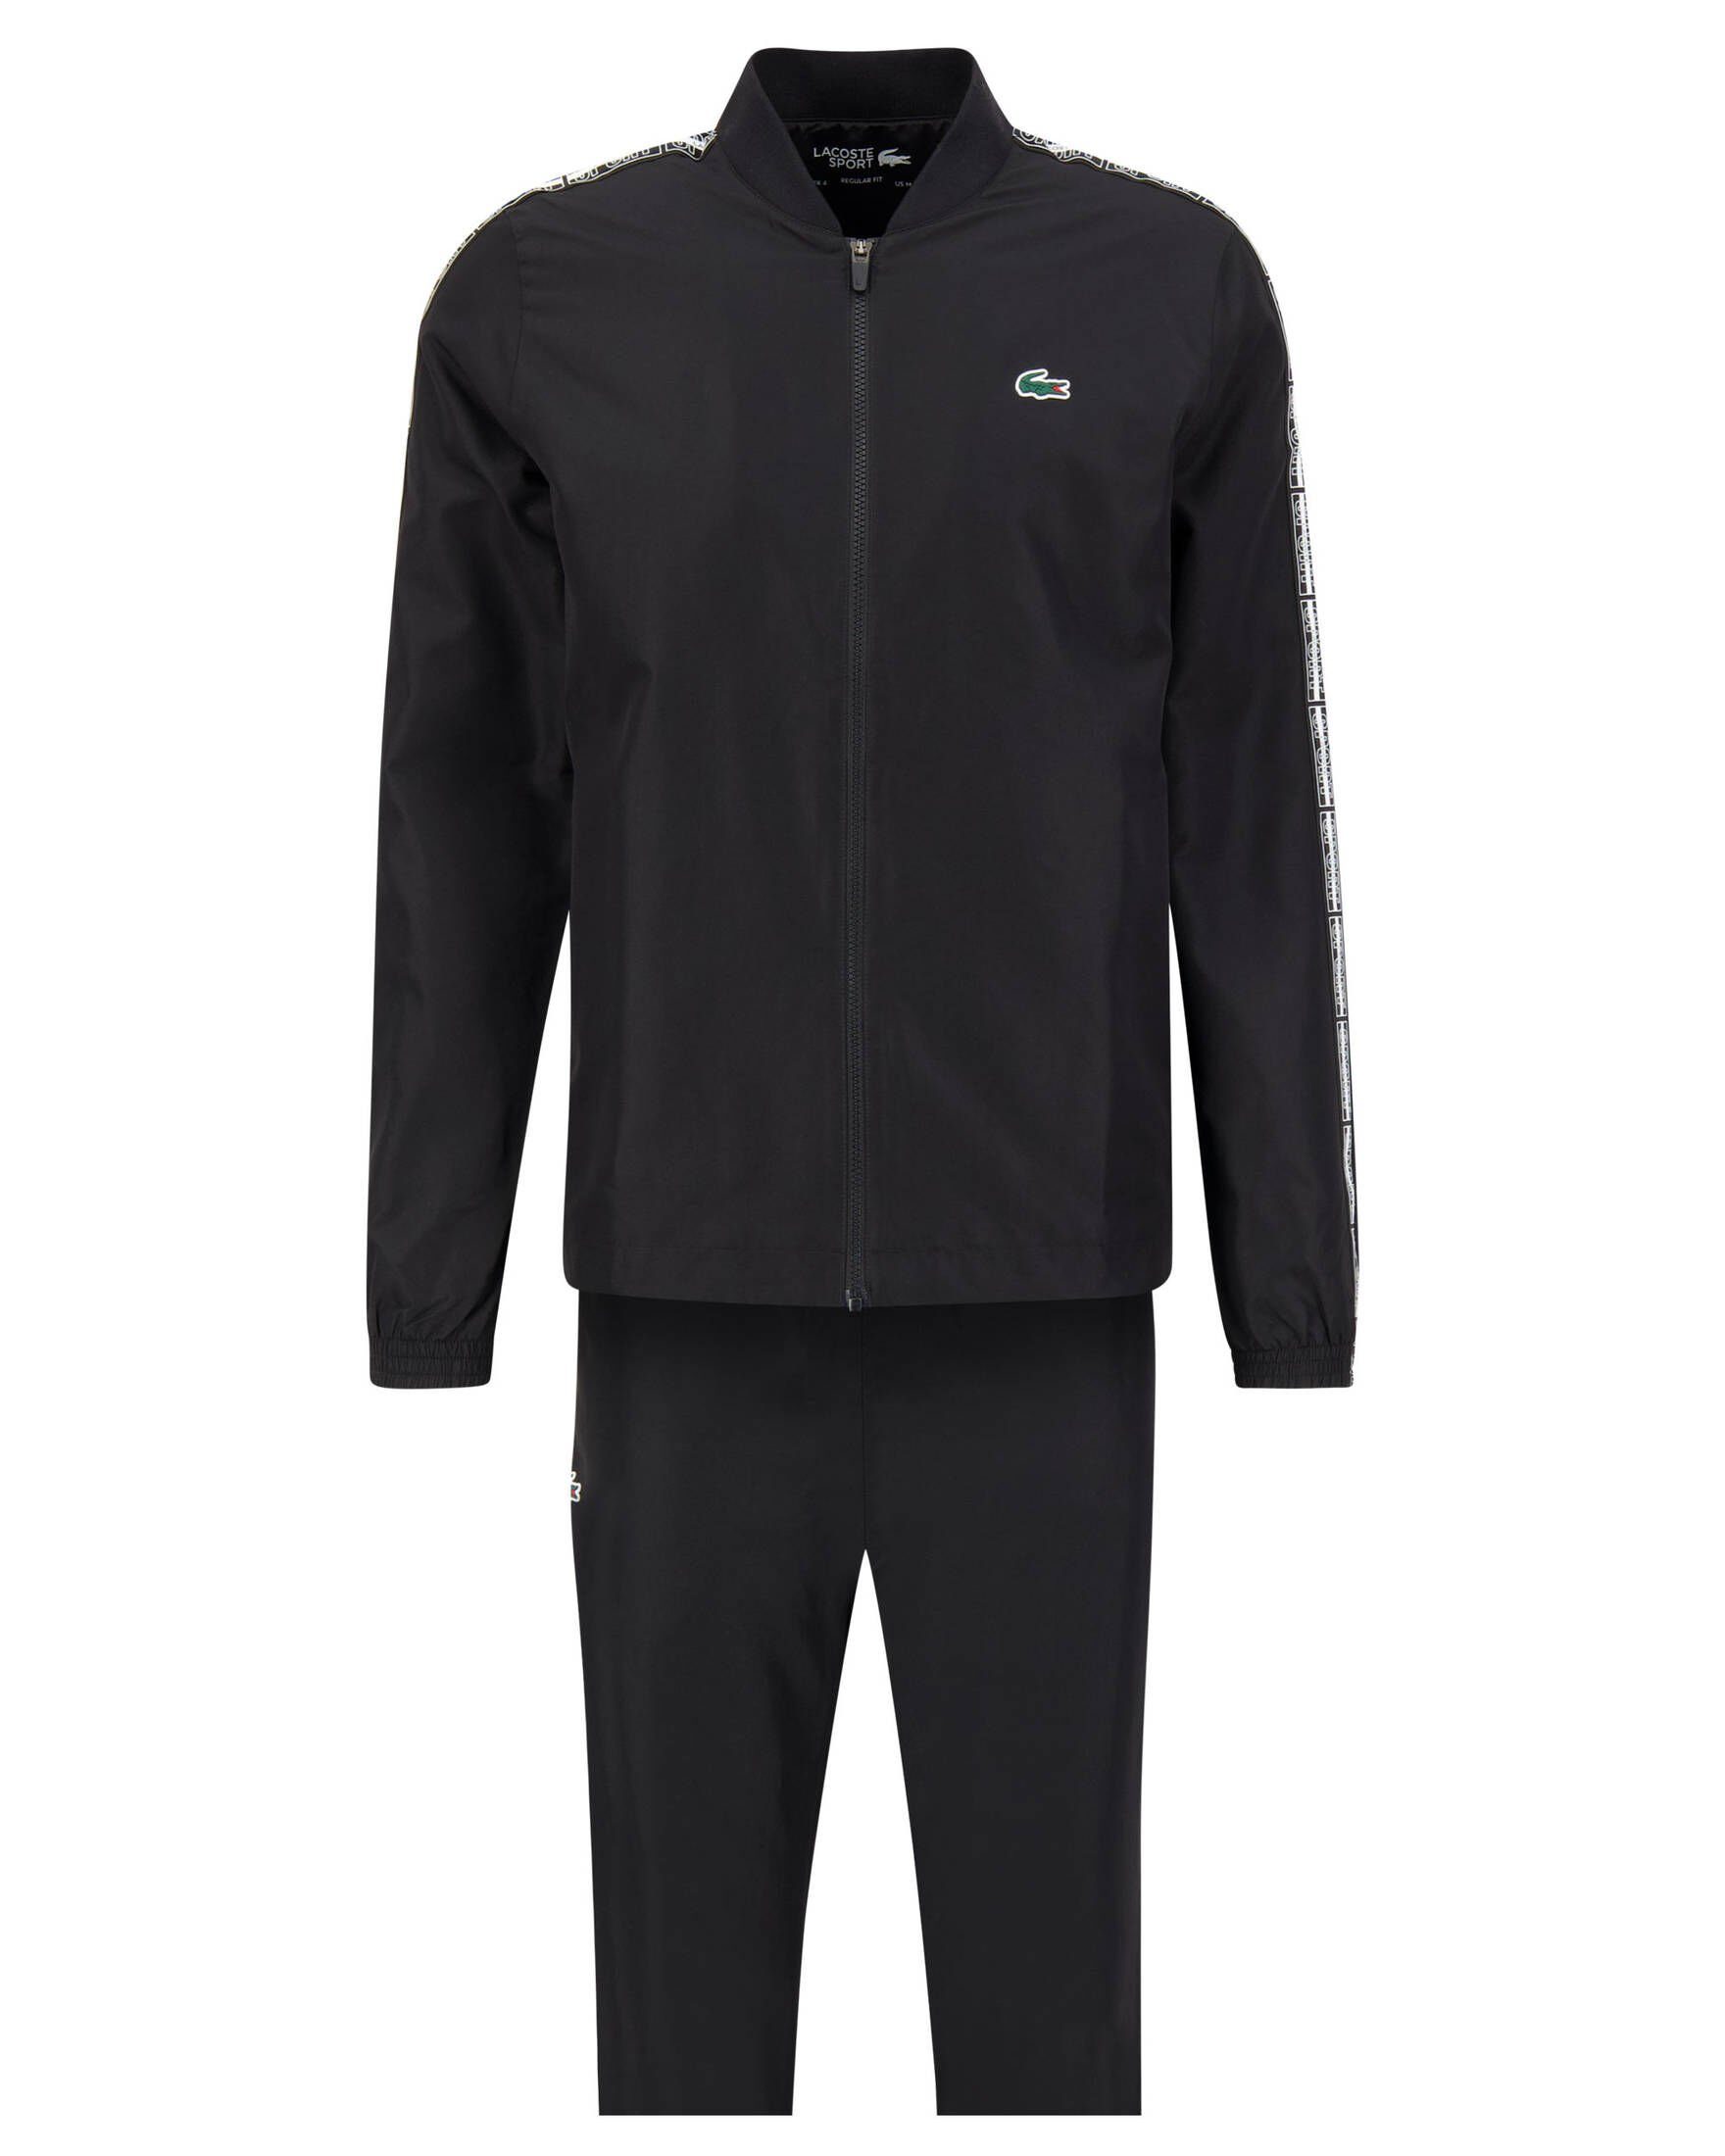 Lacoste (200) Herren Trainingsanzug schwarz Tennis-Anzug Sport